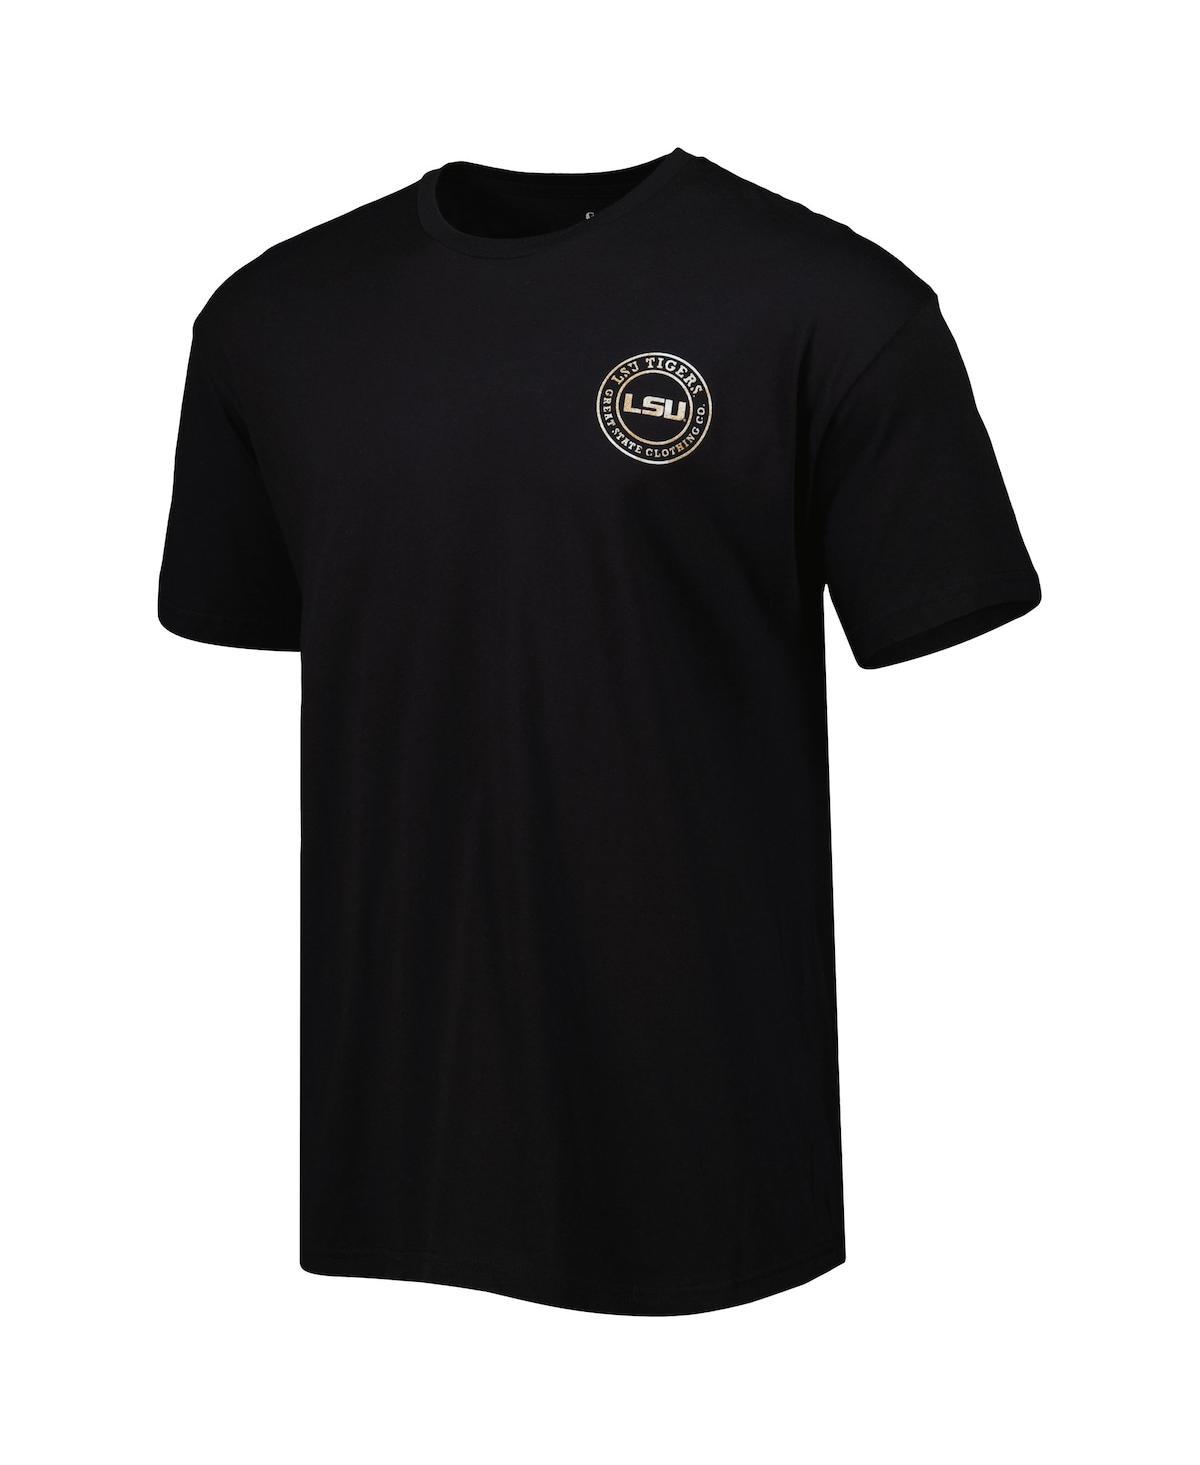 LSU Louisiana Shirt - Black exclusive at Tiger Nation